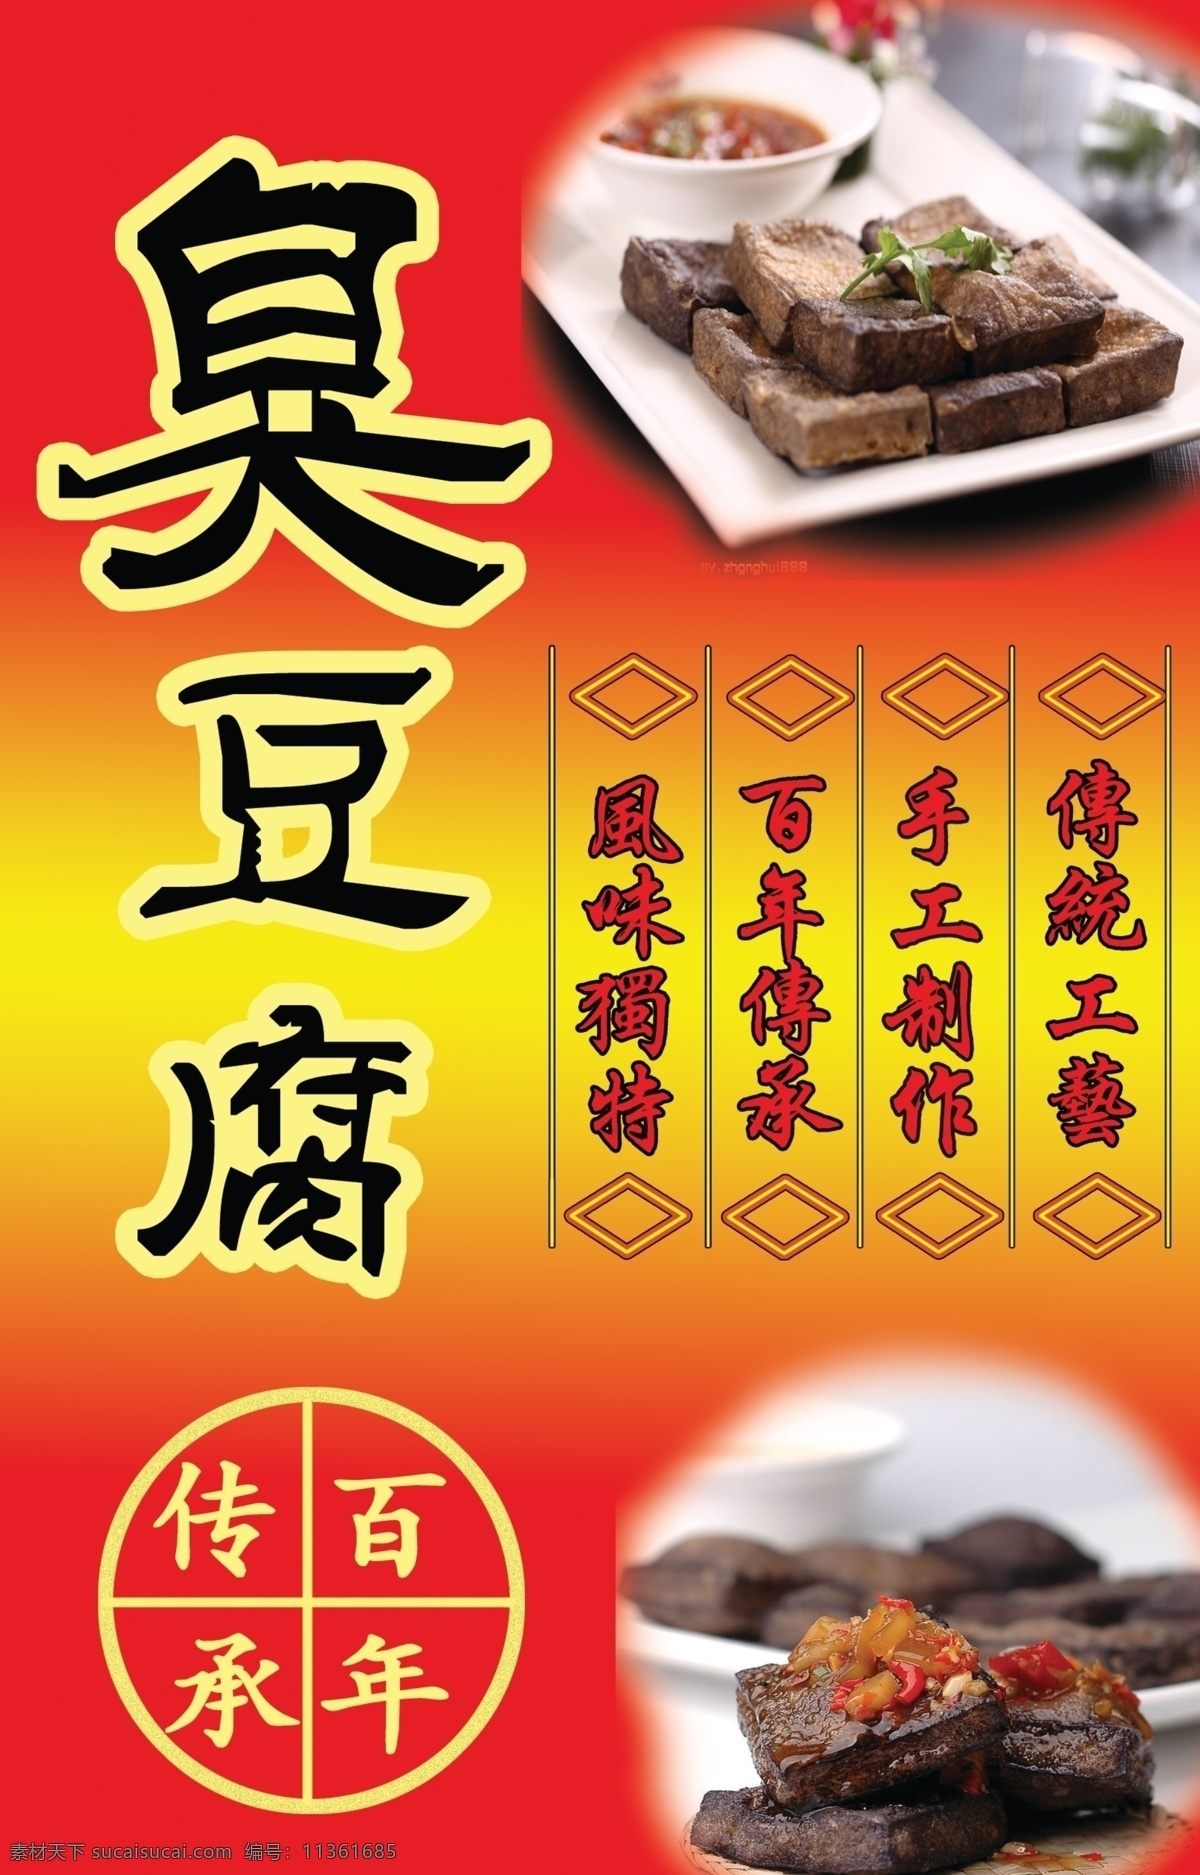 臭豆腐 小吃 广告设计模板 源文件 臭豆腐小吃 小吃车喷绘 其他海报设计